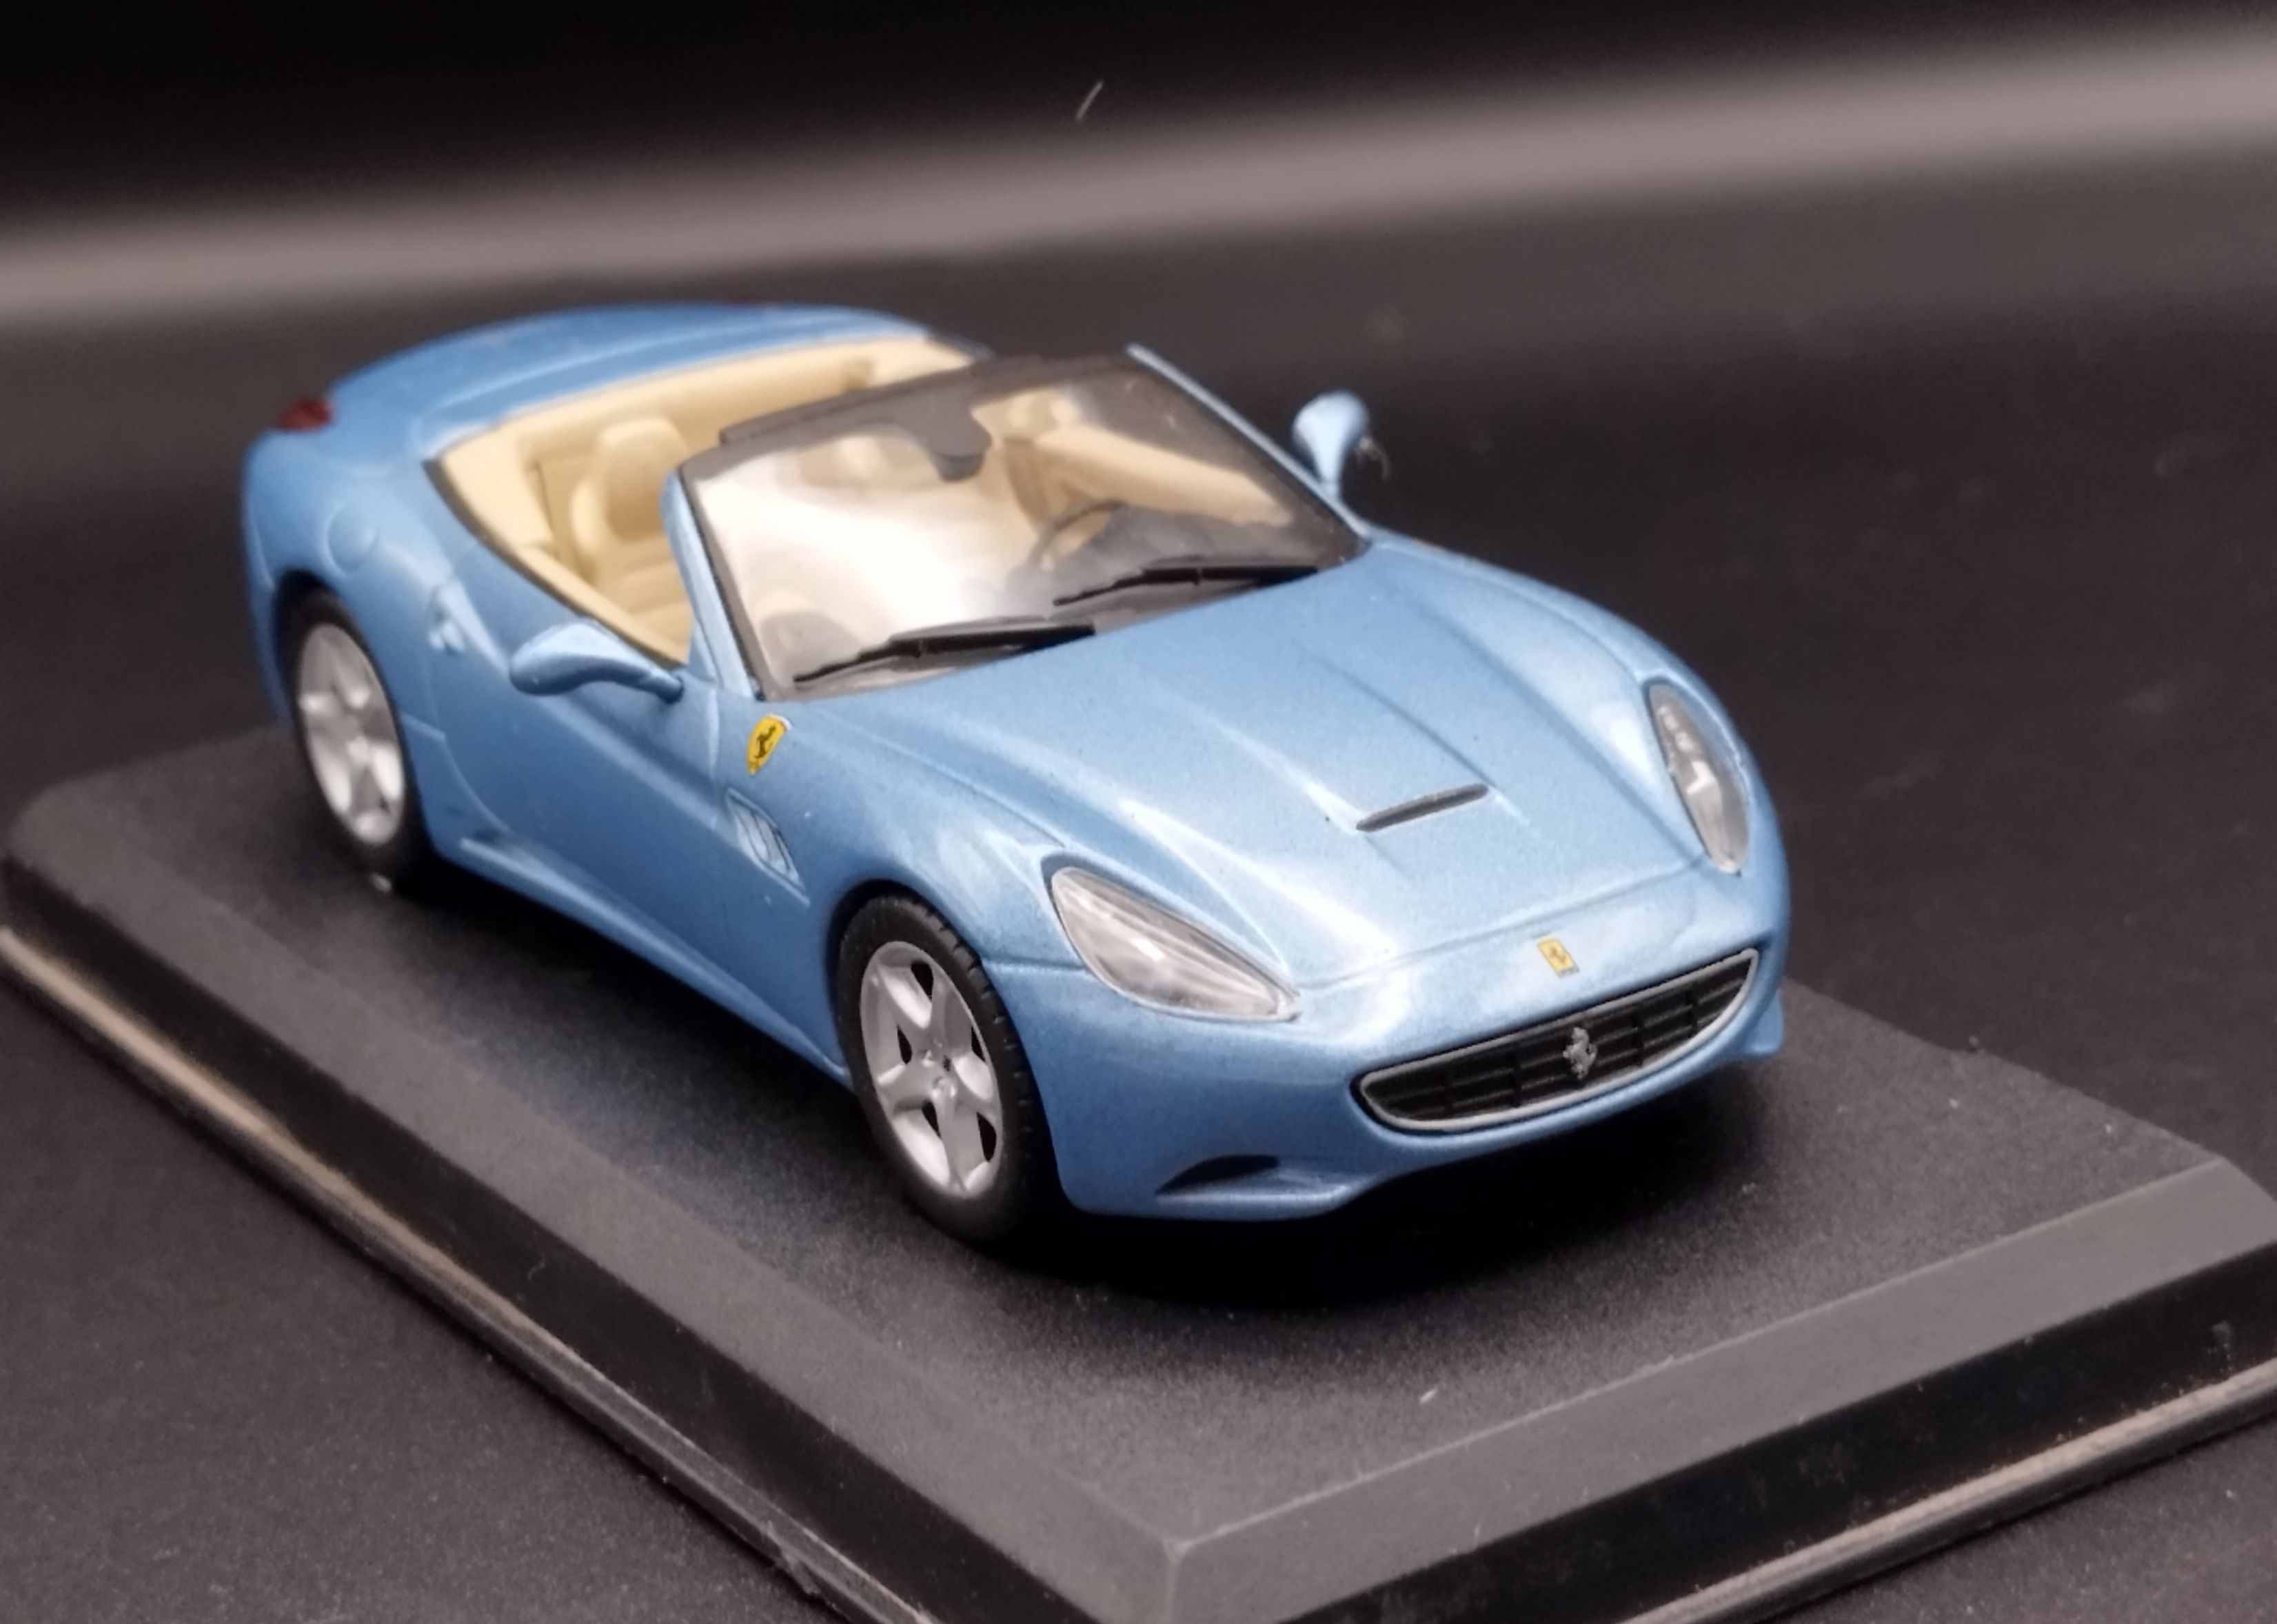 1:43 Altaya Ferrari California Blue model używany